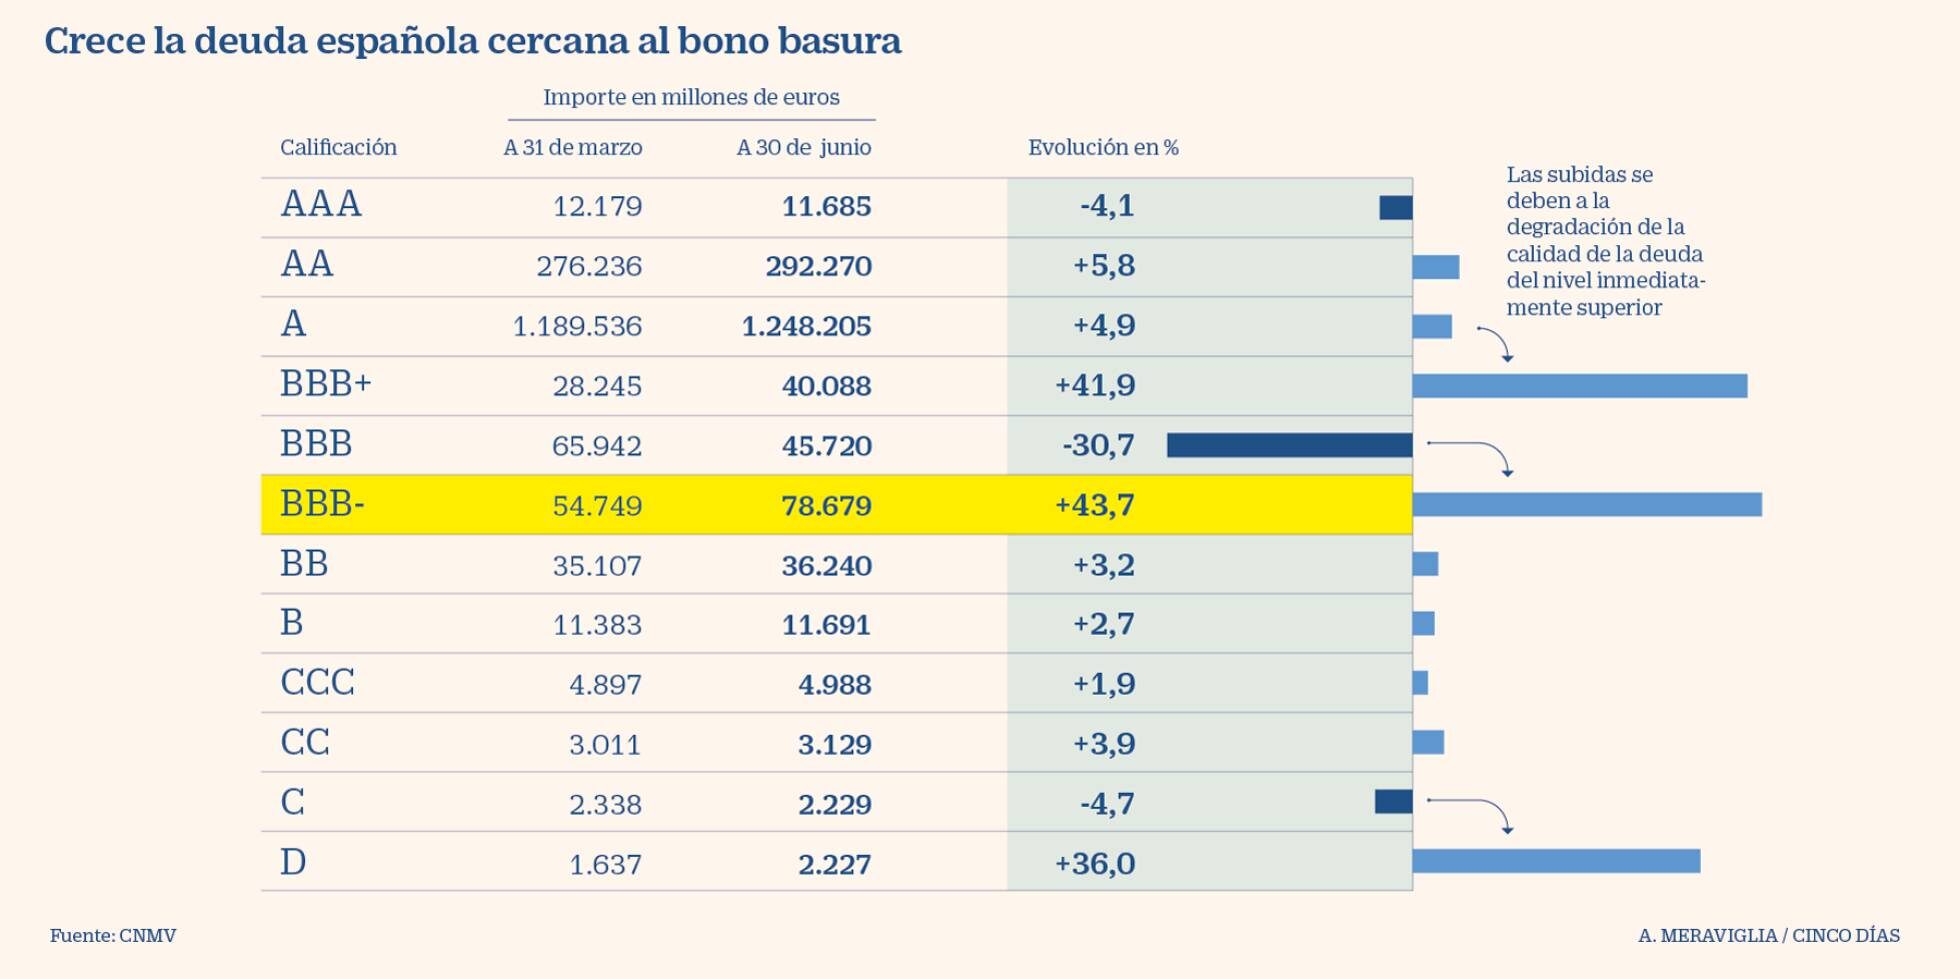 Preparando a España para venderla barata,La deuda española al borde de caer al nivel de bono basura,se dispara un 44%